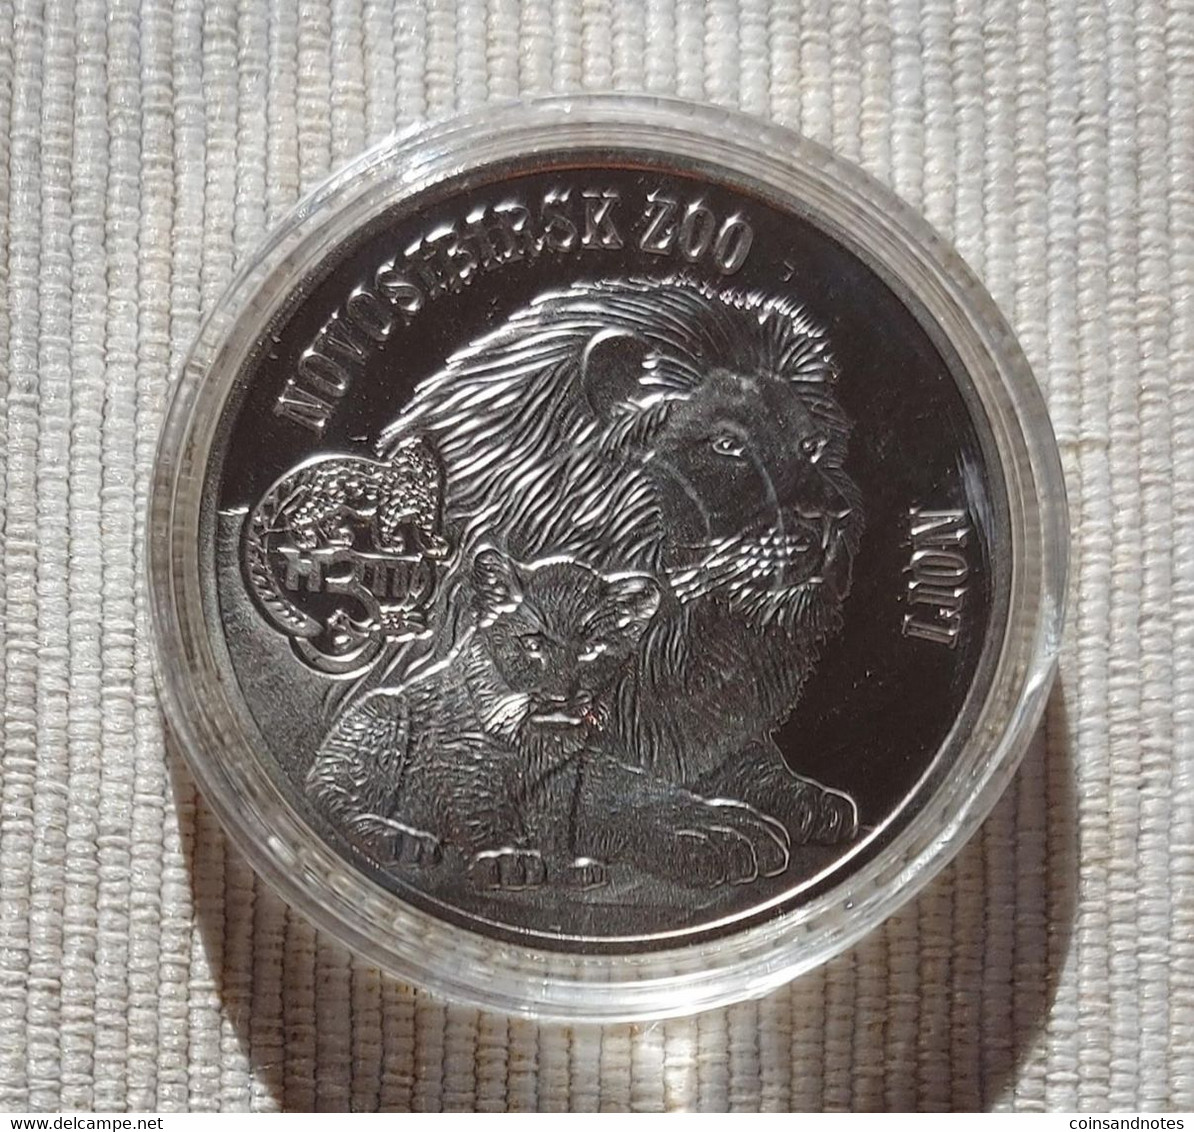 British Virgin Islands 2015 - 1 Silver Plated Dollar - Novosibirsk Zoo/Lion - UNC - Jungferninseln, Britische